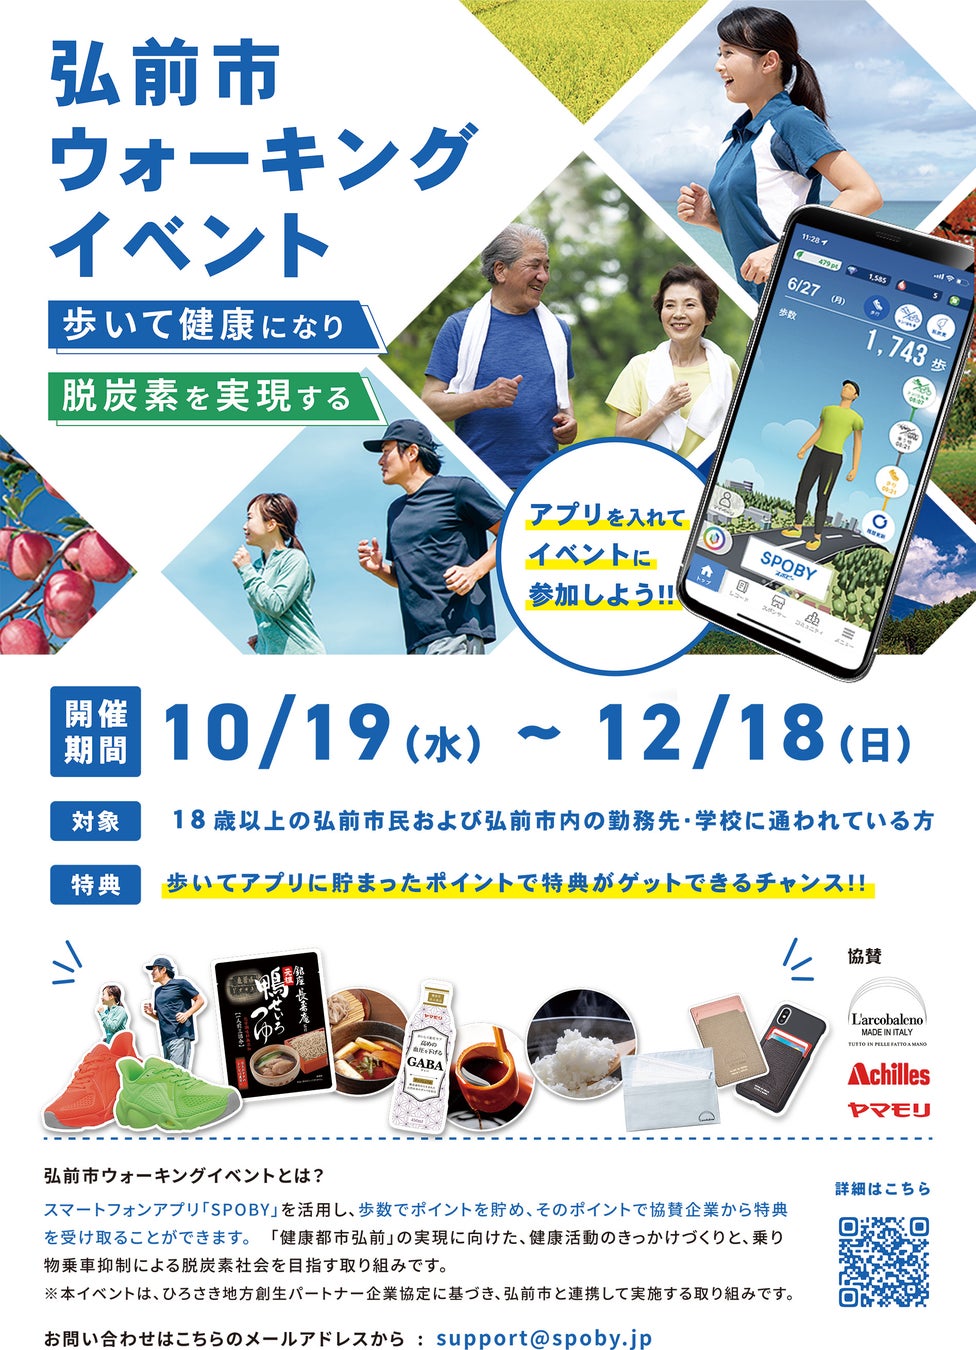 青森県弘前市 2ヶ月で一人あたり1,350歩/日の歩数増加、2.1tの脱炭素 / スマホアプリSPOBYのサブ画像1